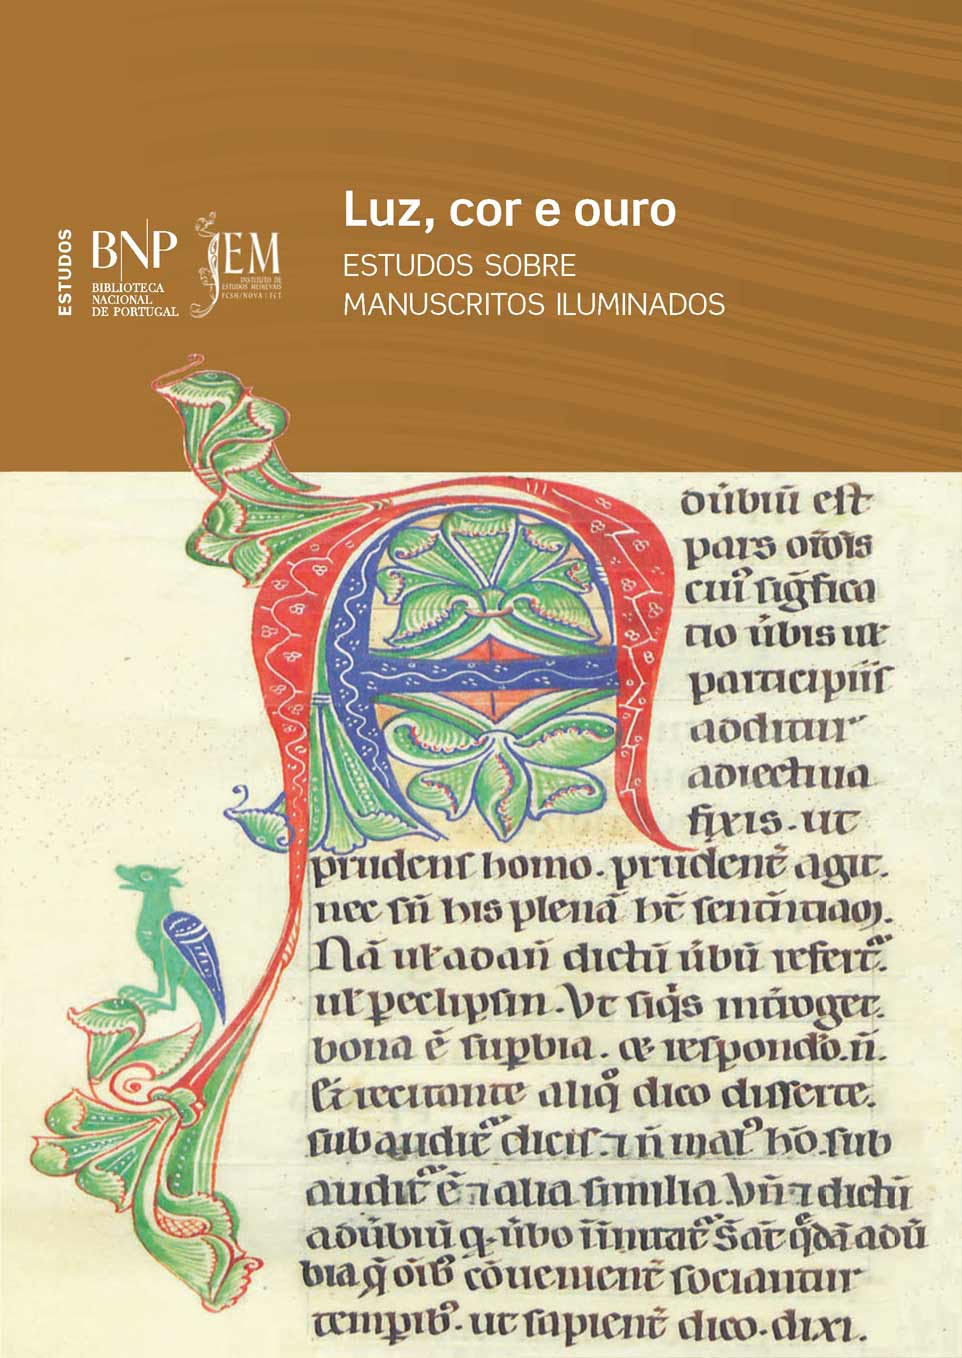 Capa da publicação Luz, cor e ouro. Estudos sobre manuscritos iluminados